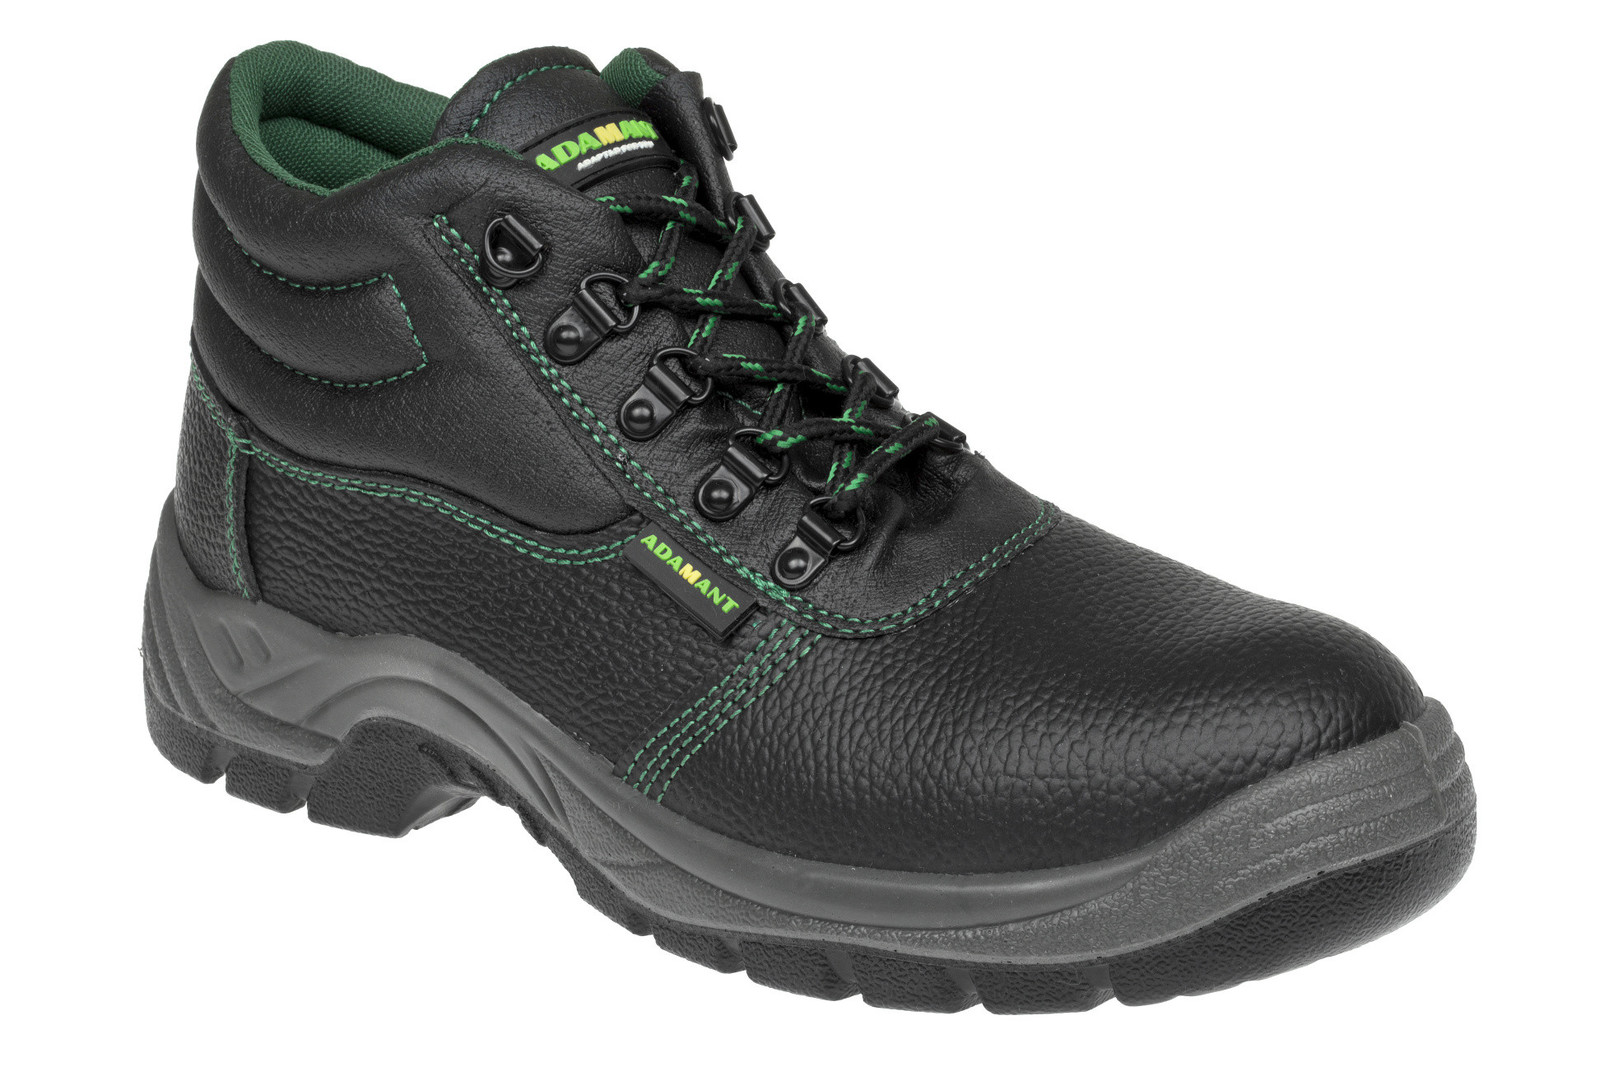 Bezpečnostná obuv Adamant Classic S1P - veľkosť: 50, farba: čierna